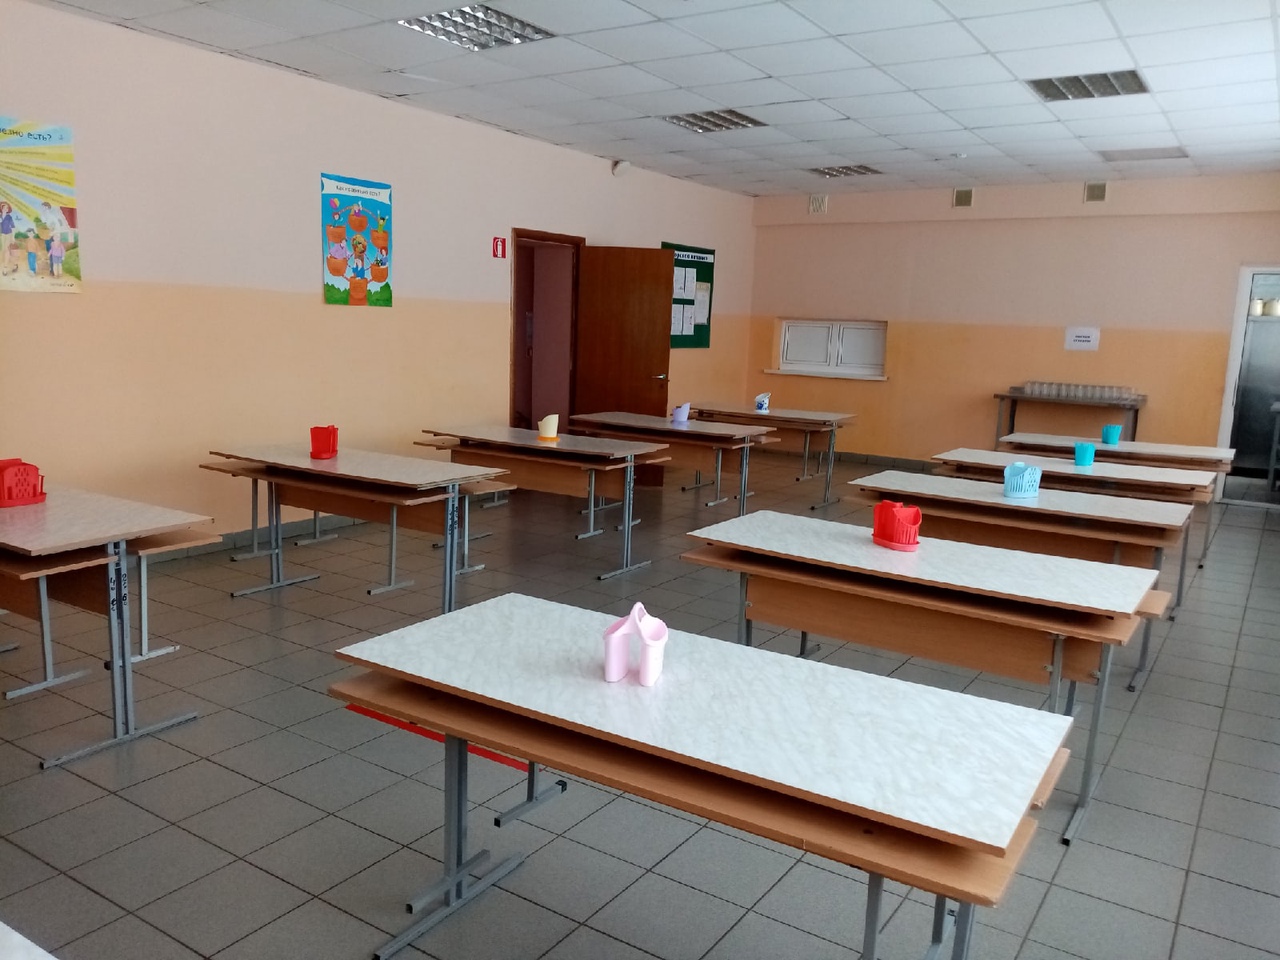  Организатором питания  является  МОУ «Илек-Кошарская средняя общеобразовательная школа»